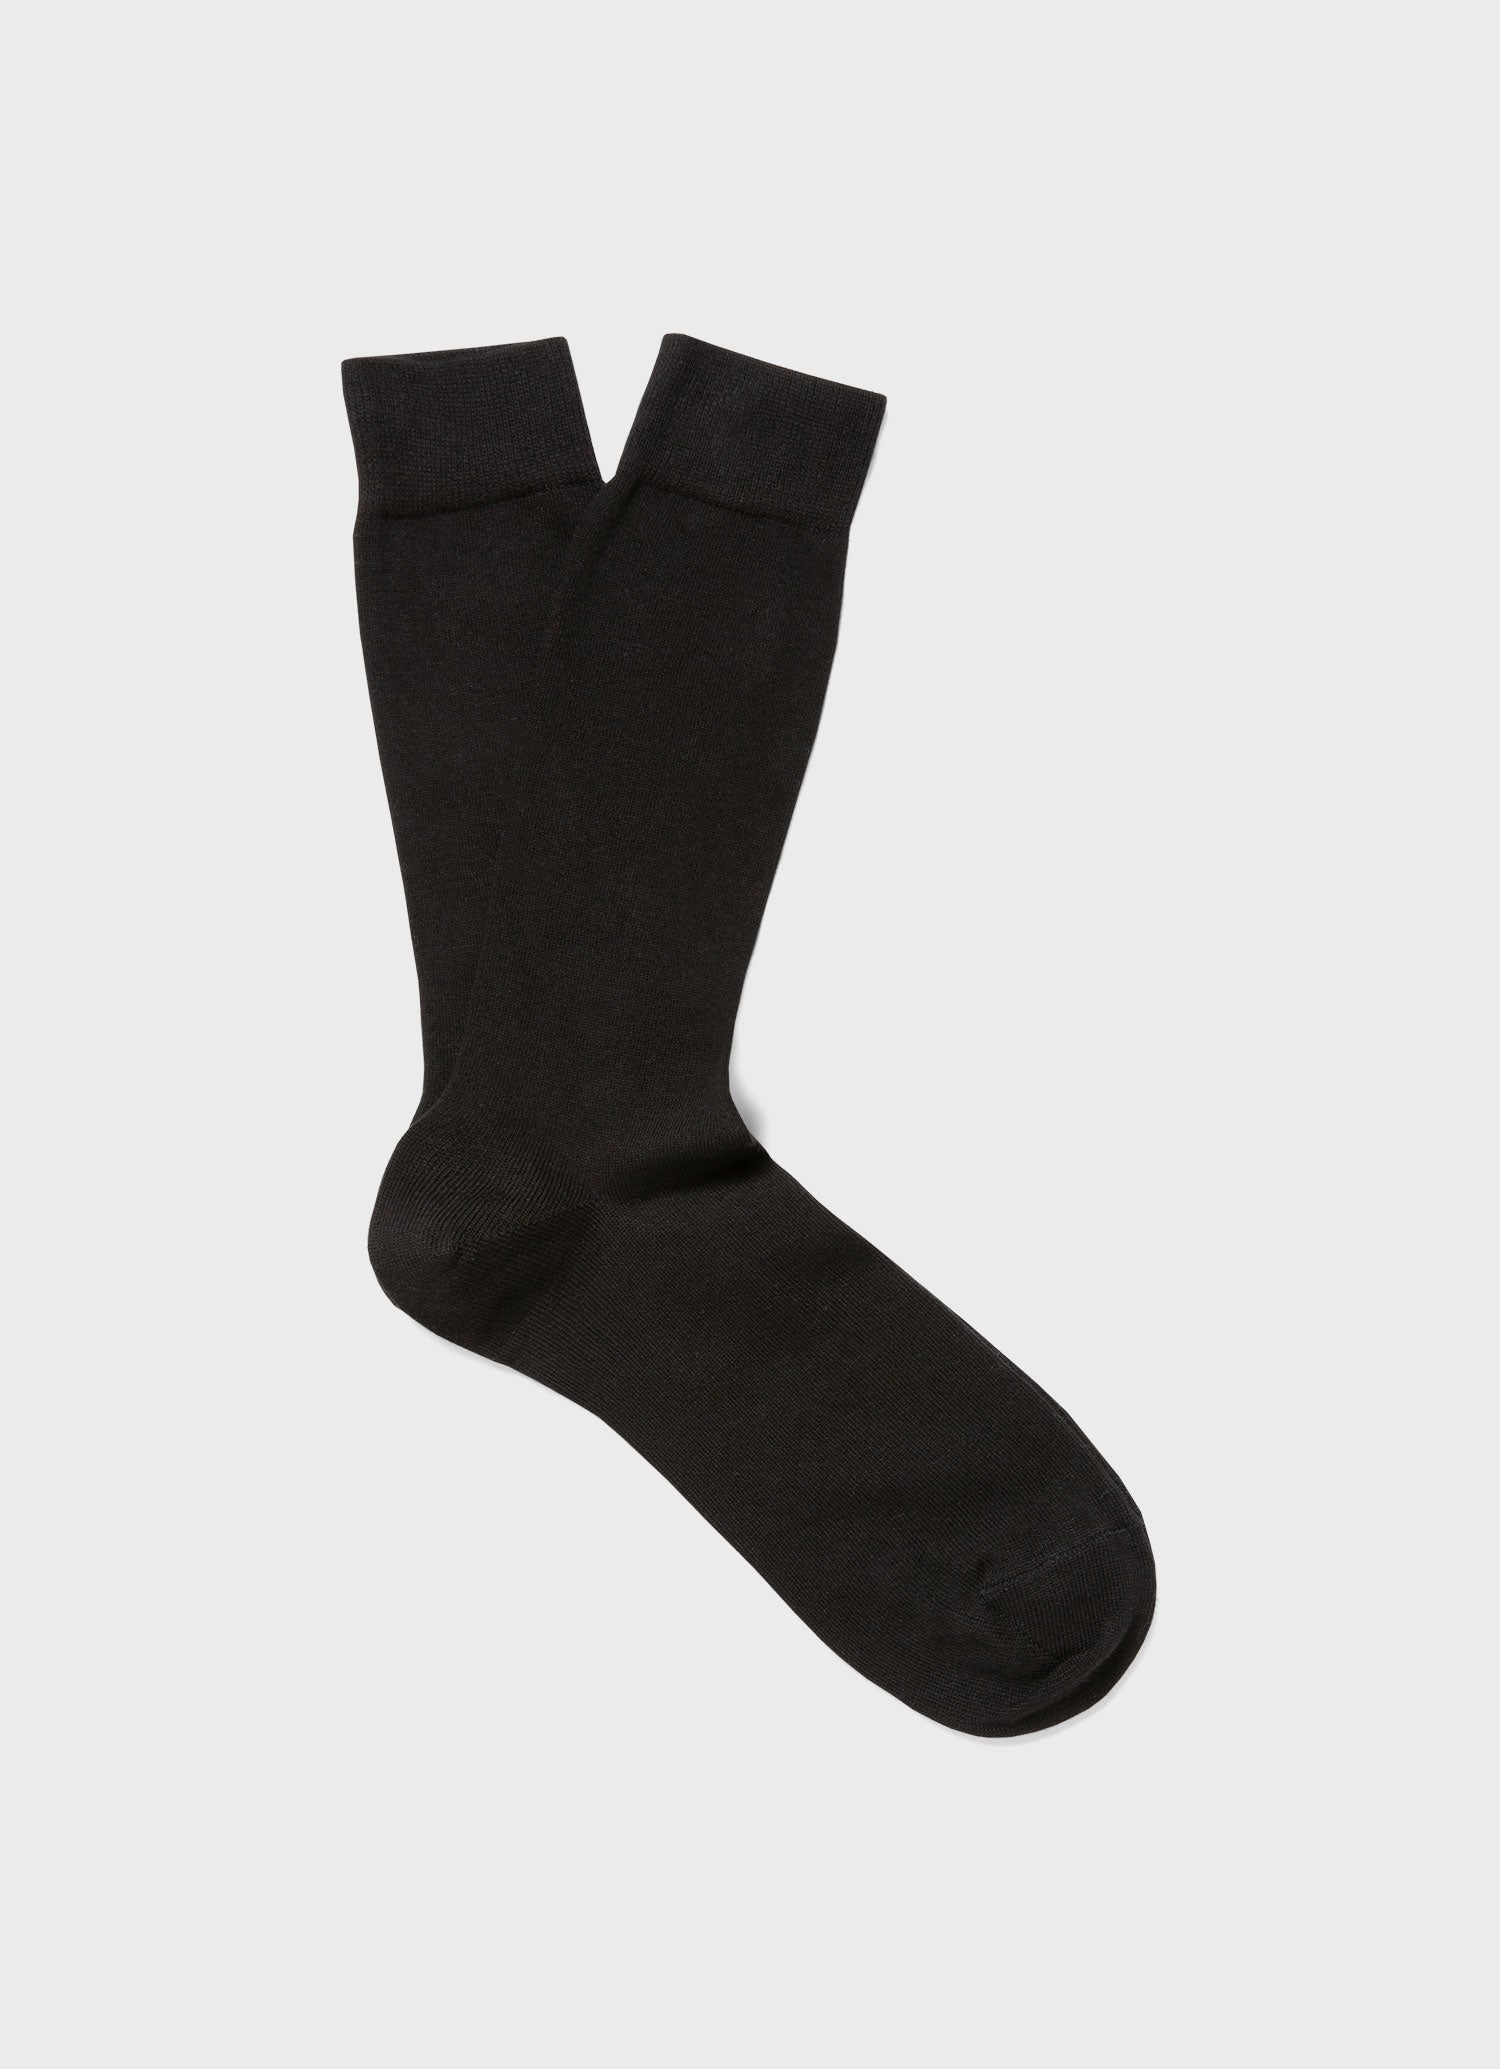 Men's Long Staple Cotton Socks in Black